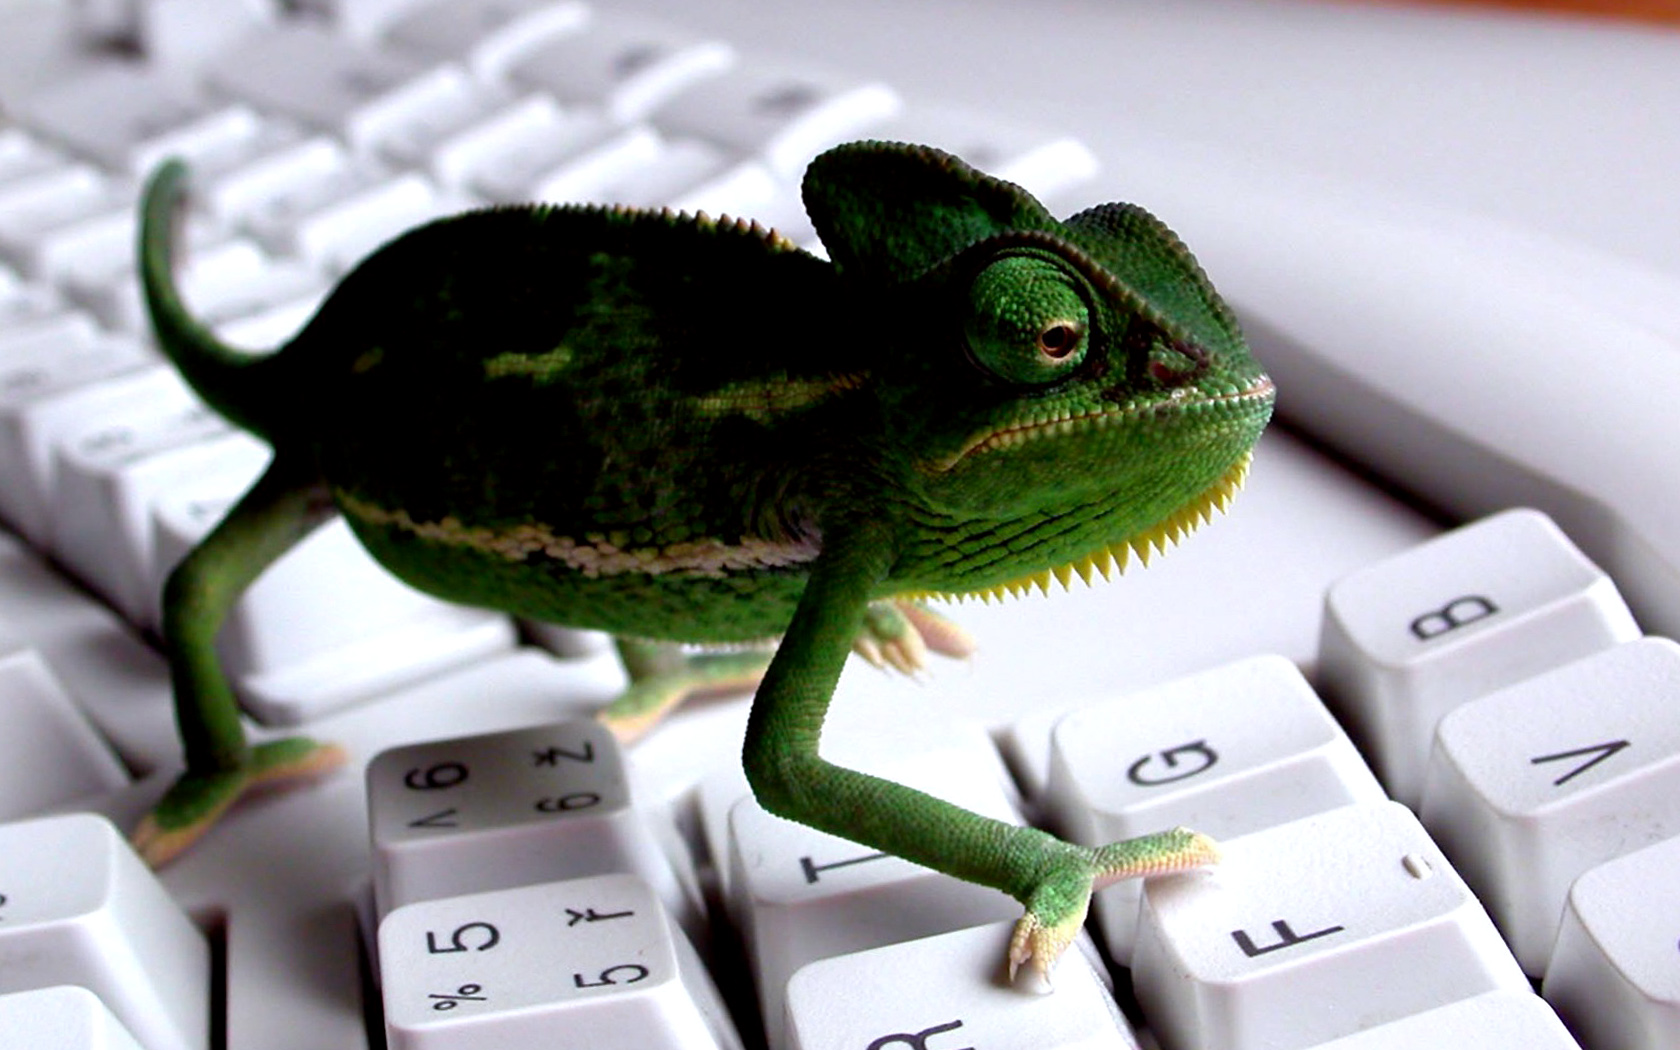 Funny Lizard On Keyboard Full Wallpaper